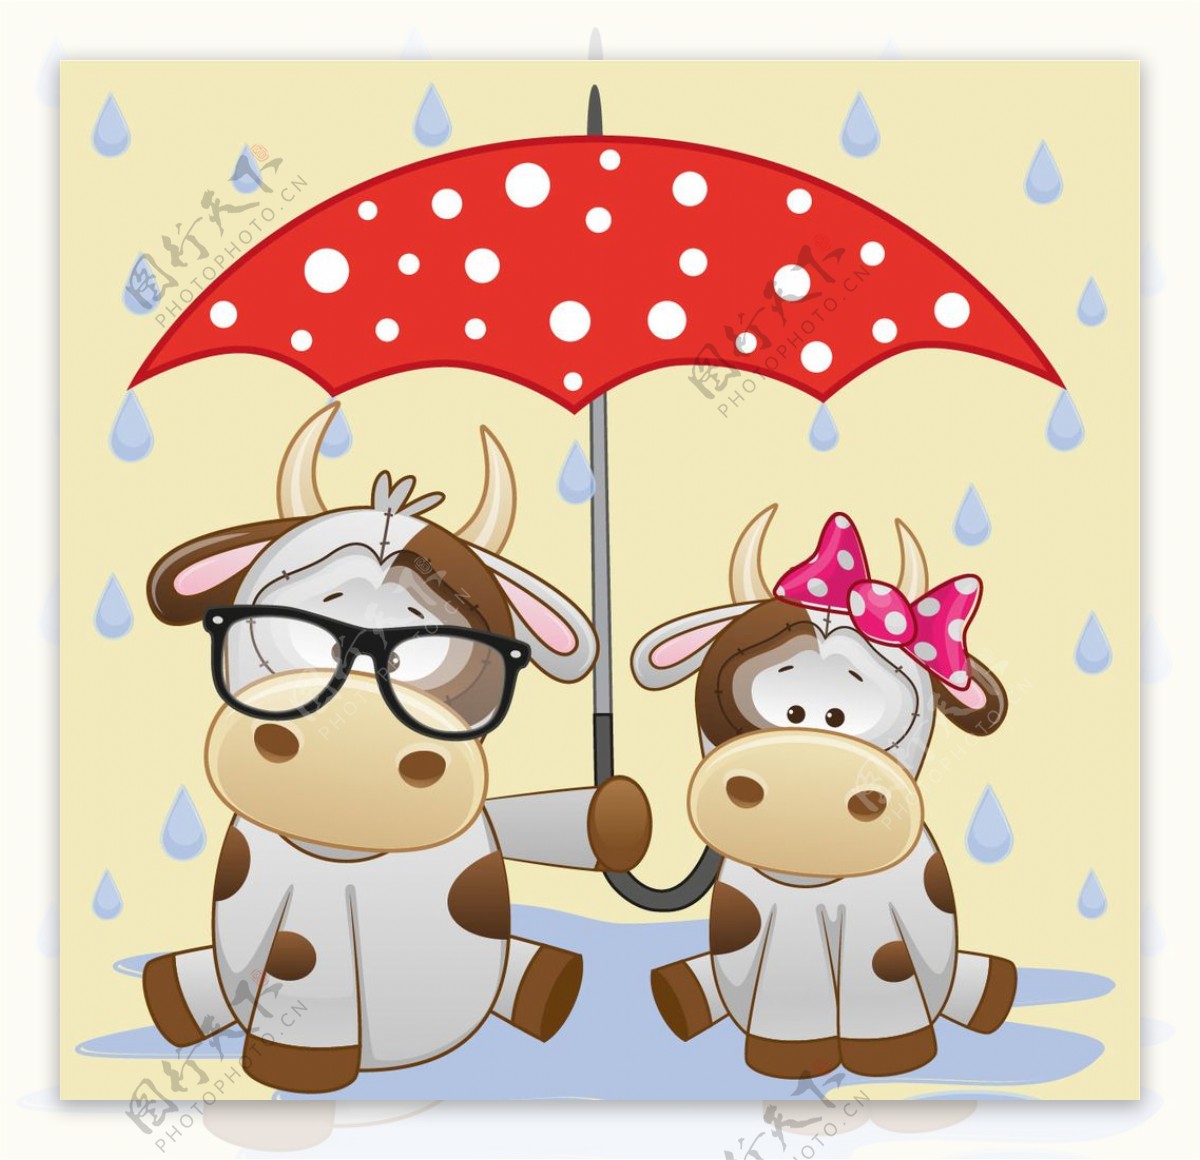 可爱的动物和雨伞卡通矢量图